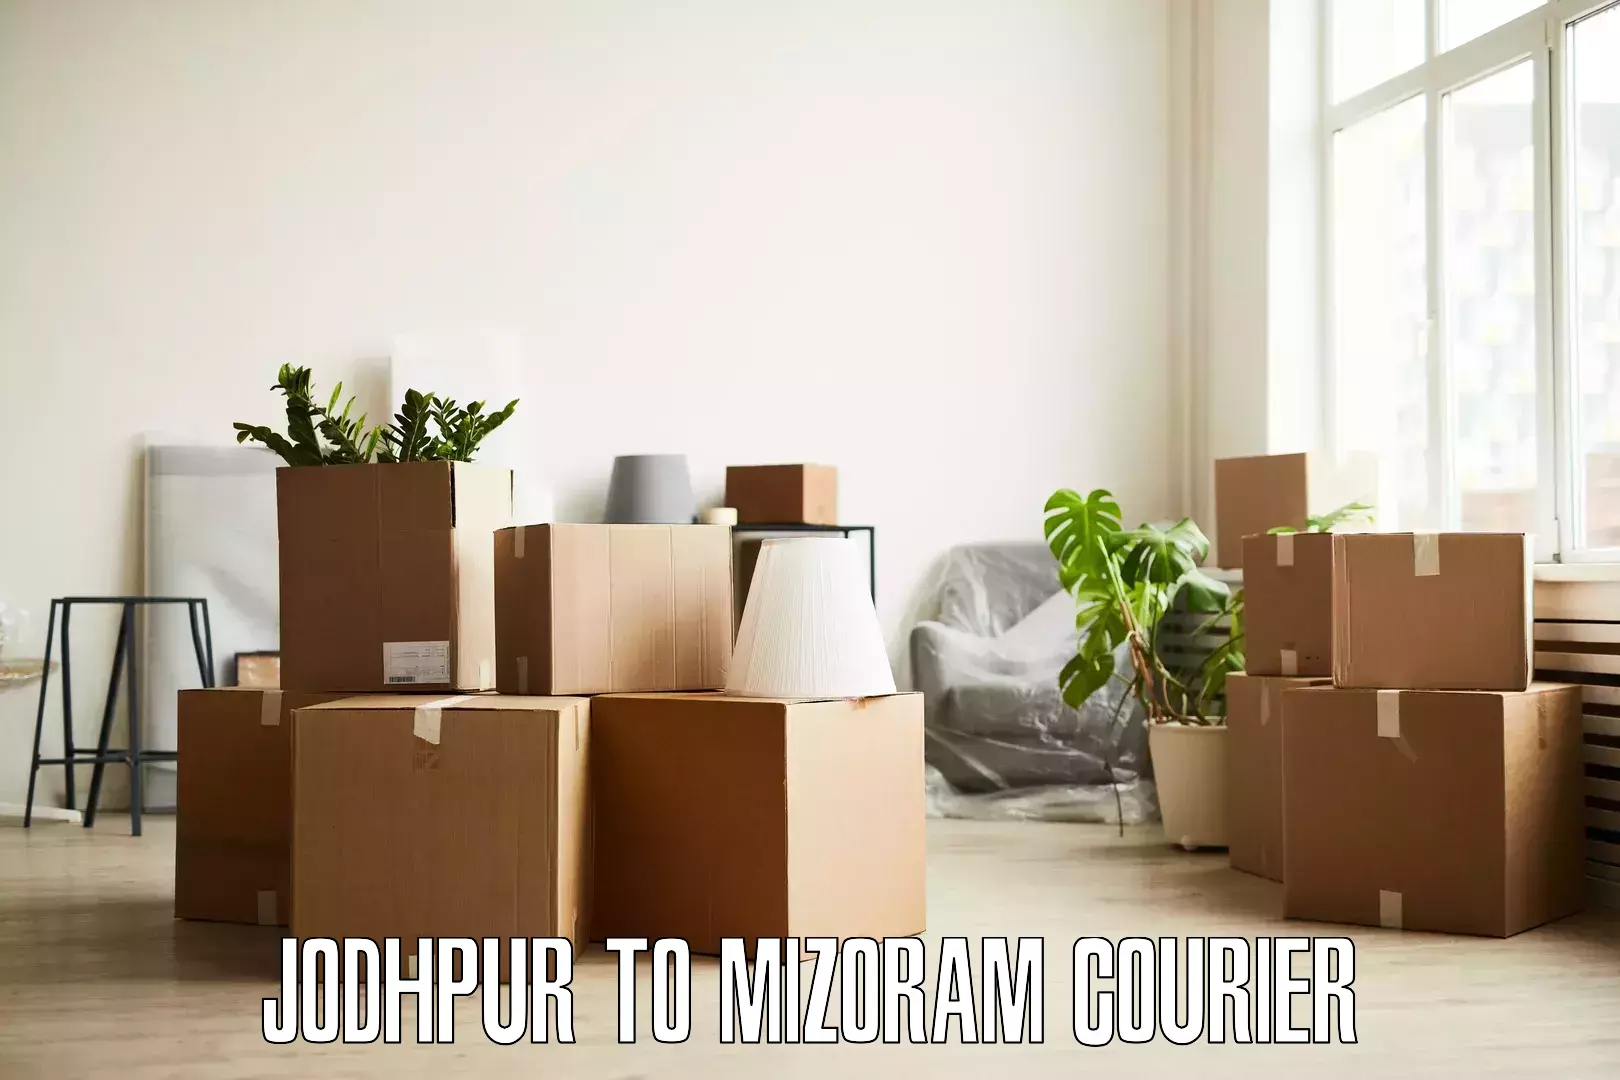 Furniture transport solutions Jodhpur to Aizawl